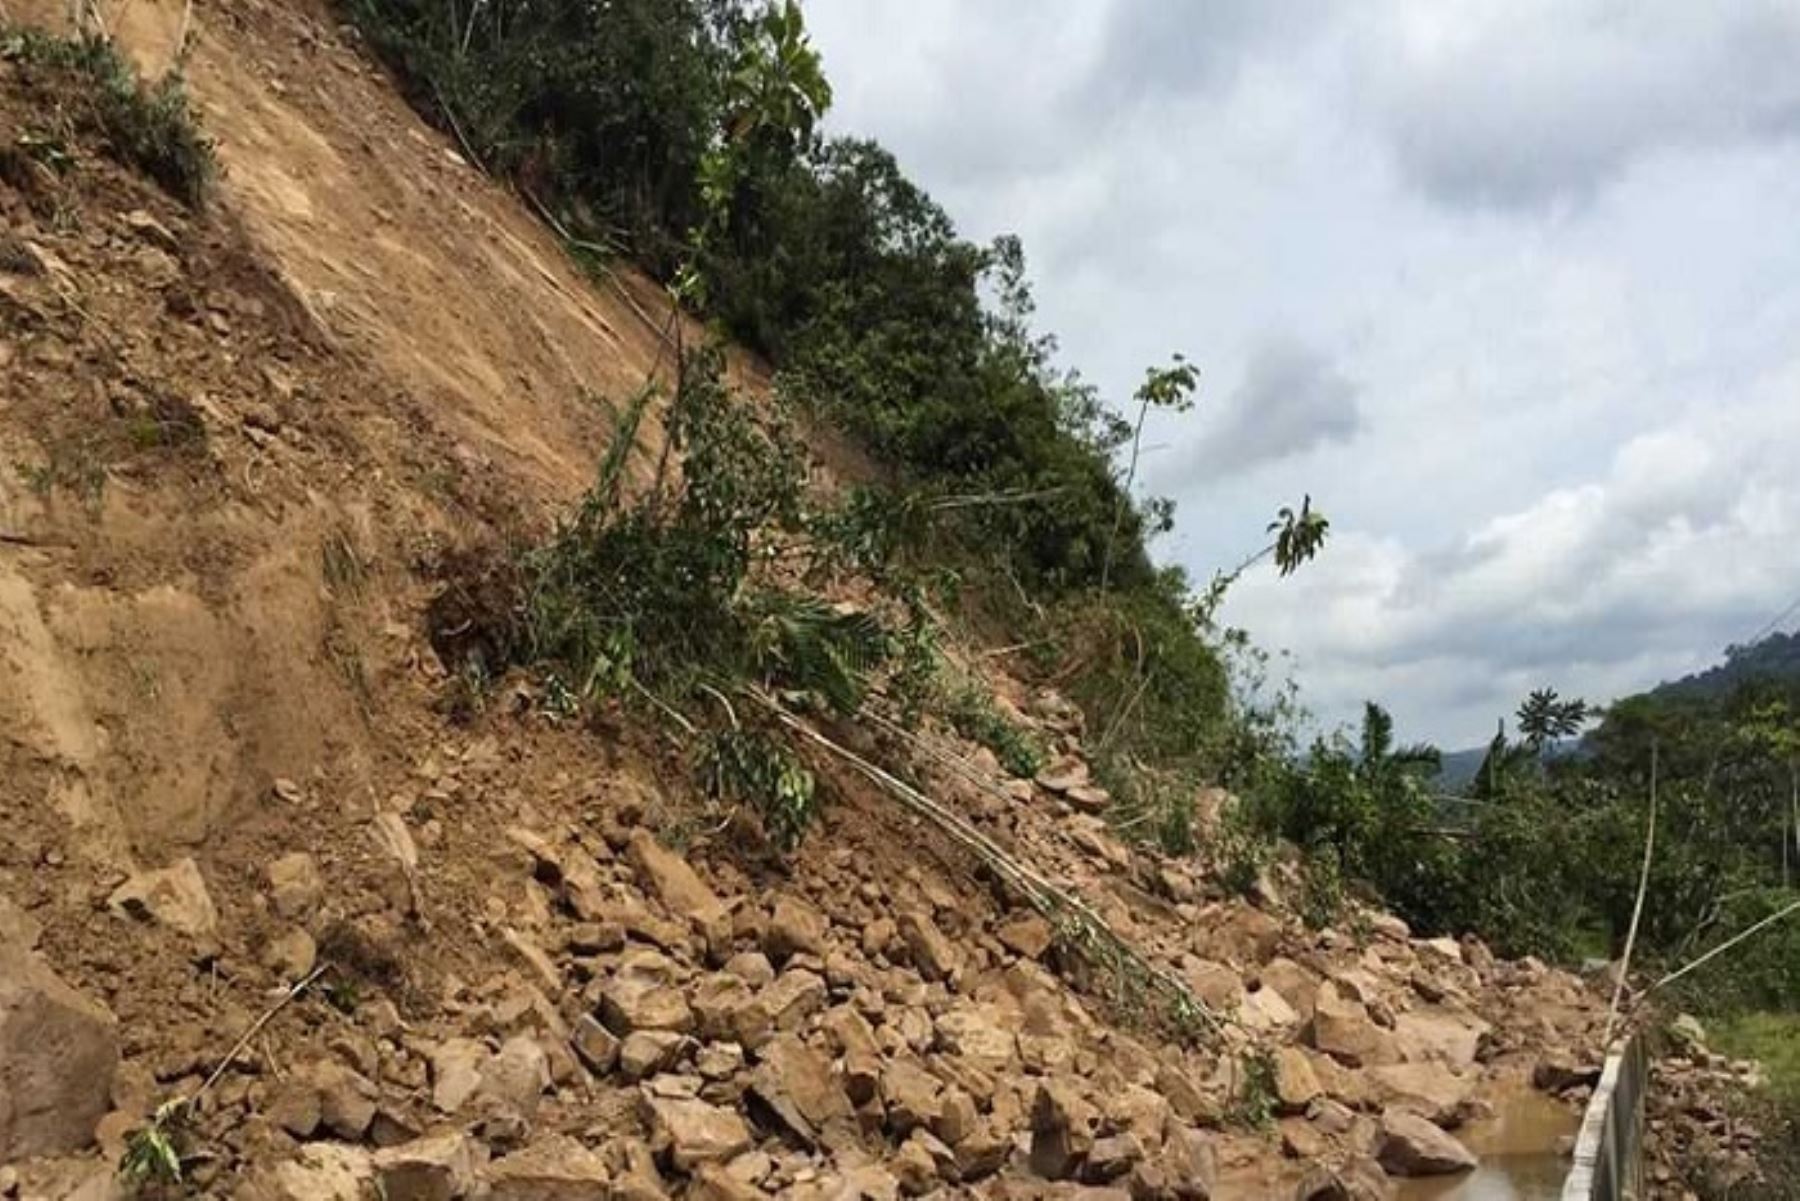 Las fuertes precipitaciones pluviales provocaron un deslizamiento y caída de rocas que afectó un tramo de la carretera Pedro Ruíz-Chachapoyas (altura de los Kilómetros 28 y 29), en el distrito de Jazán, provincia de Bongará, región Amazonas, informó el Instituto Nacional de Defensa Civil (Indeci). ANDINA/Difusión